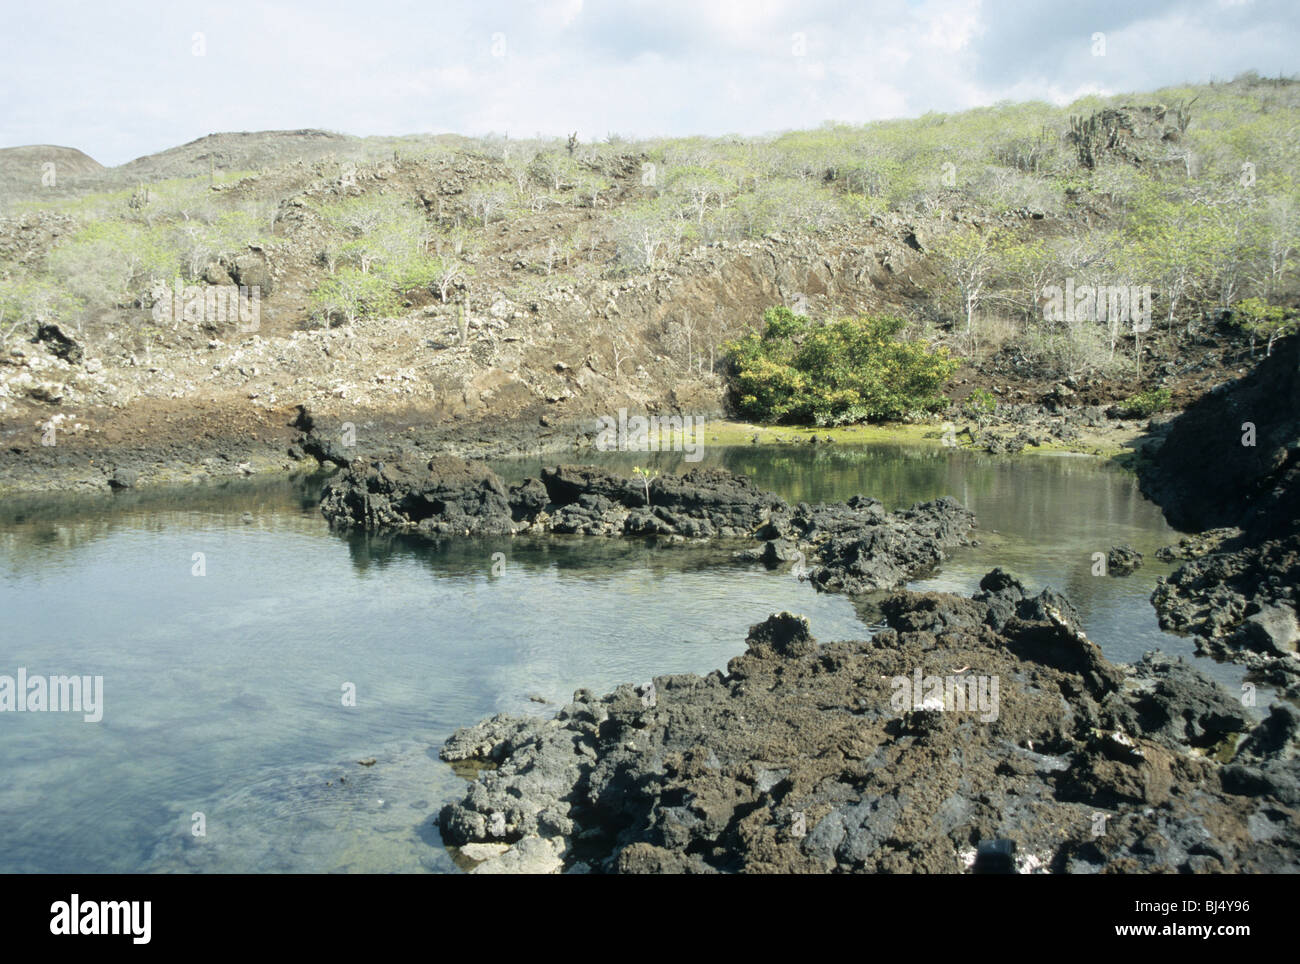 Landscape, Punta Albemarle, Isabela, Galapagos Stock Photo